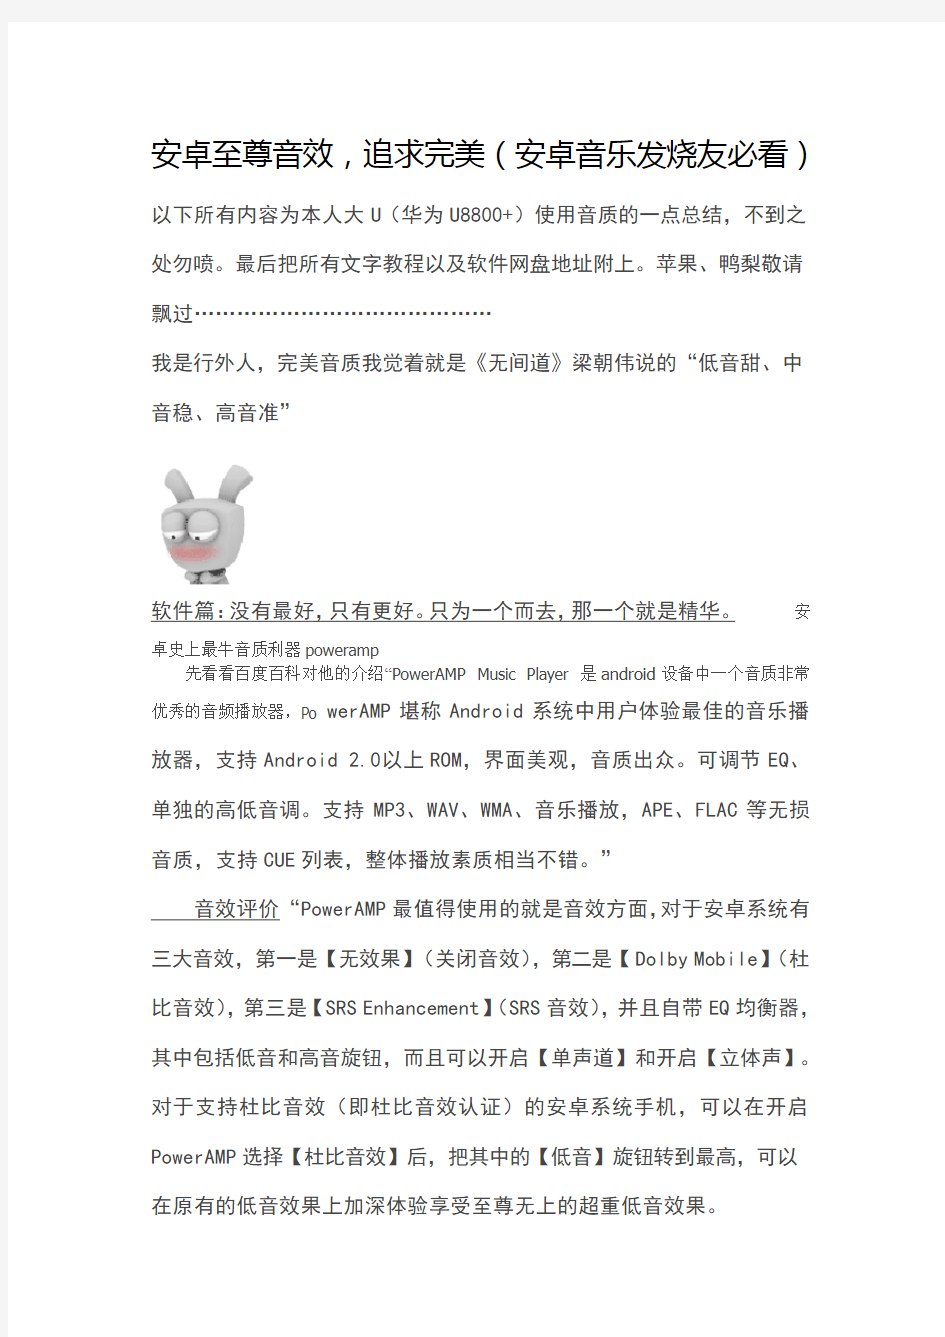 poweramp完美破解中文版下载、安装教程